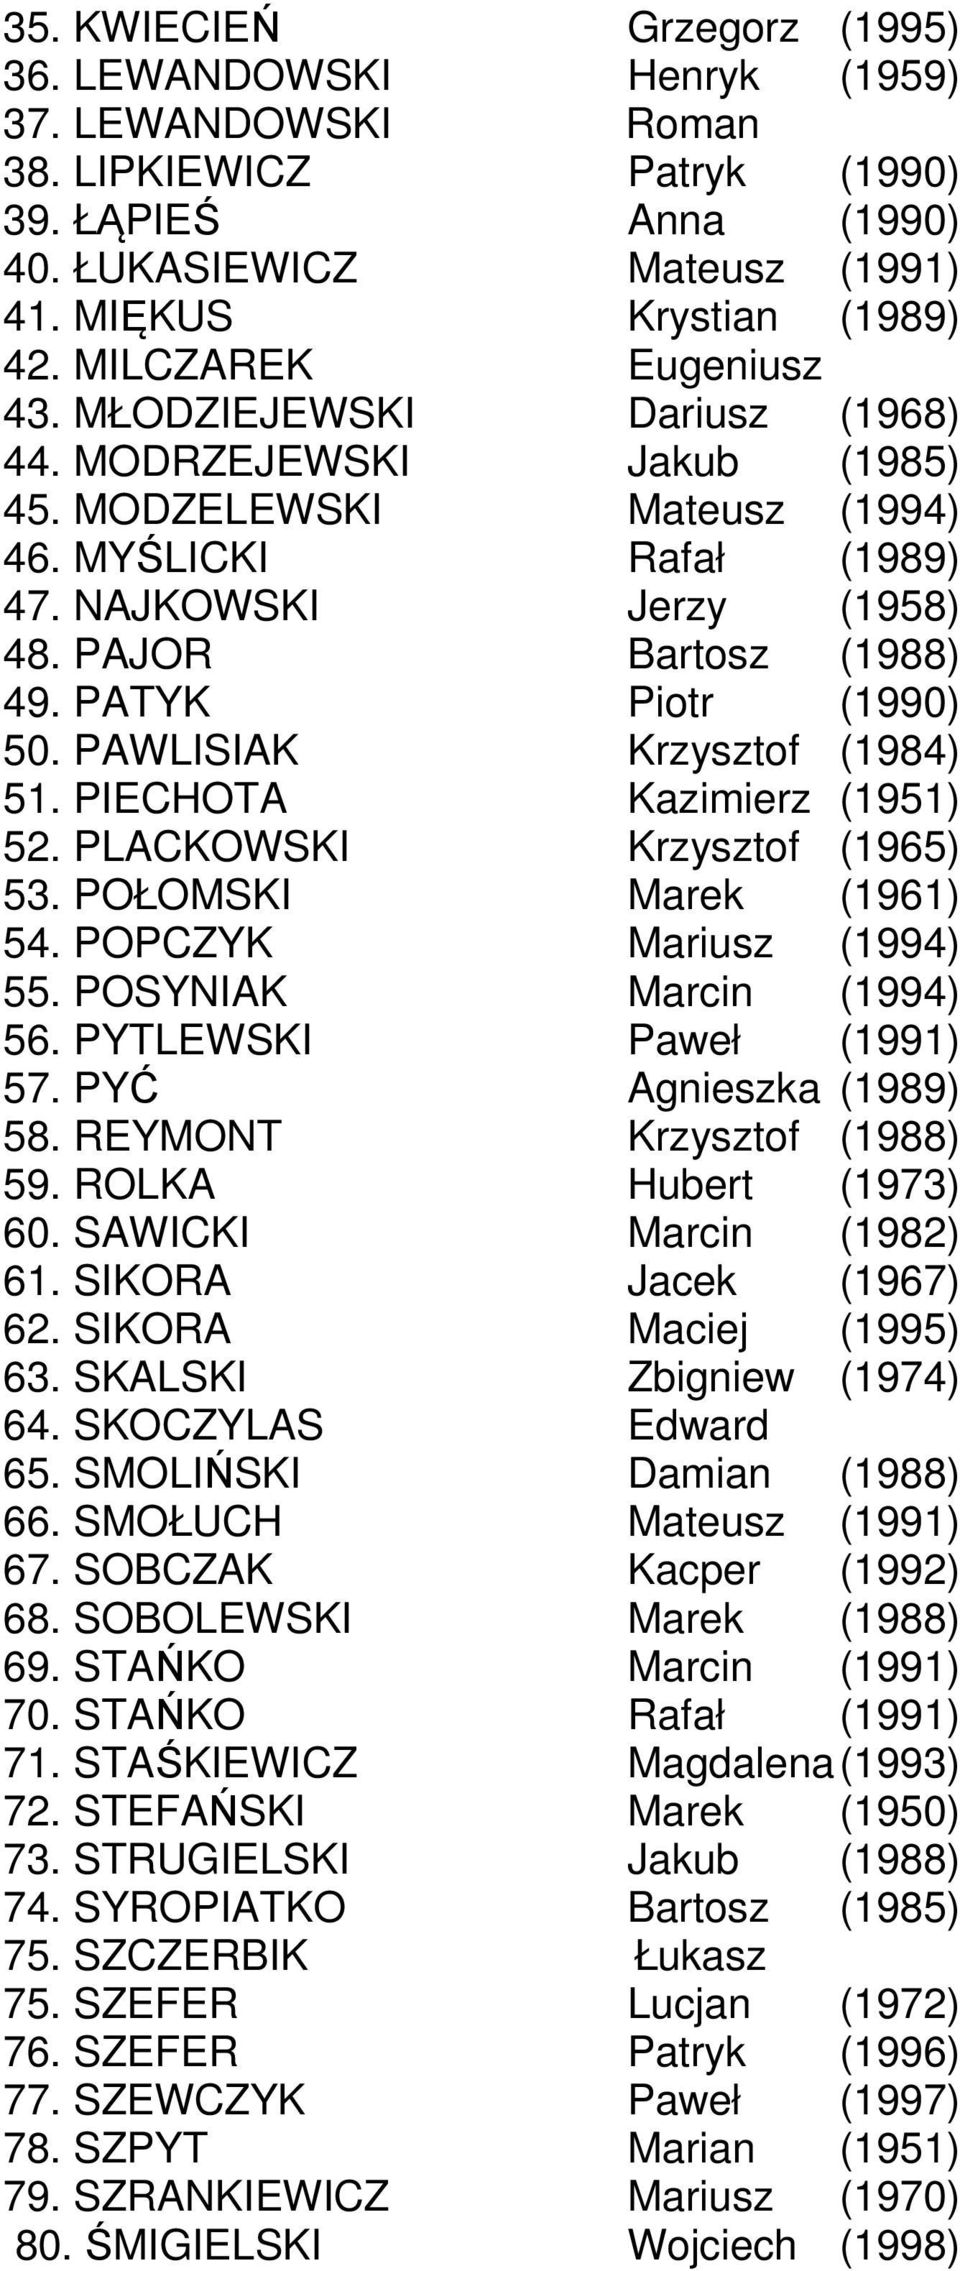 PATYK Piotr (1990) 50. PAWLISIAK Krzysztof (1984) 51. PIECHOTA Kazimierz (1951) 52. PLACKOWSKI Krzysztof (1965) 53. POŁOMSKI Marek (1961) 54. POPCZYK Mariusz (1994) 55. POSYNIAK Marcin (1994) 56.